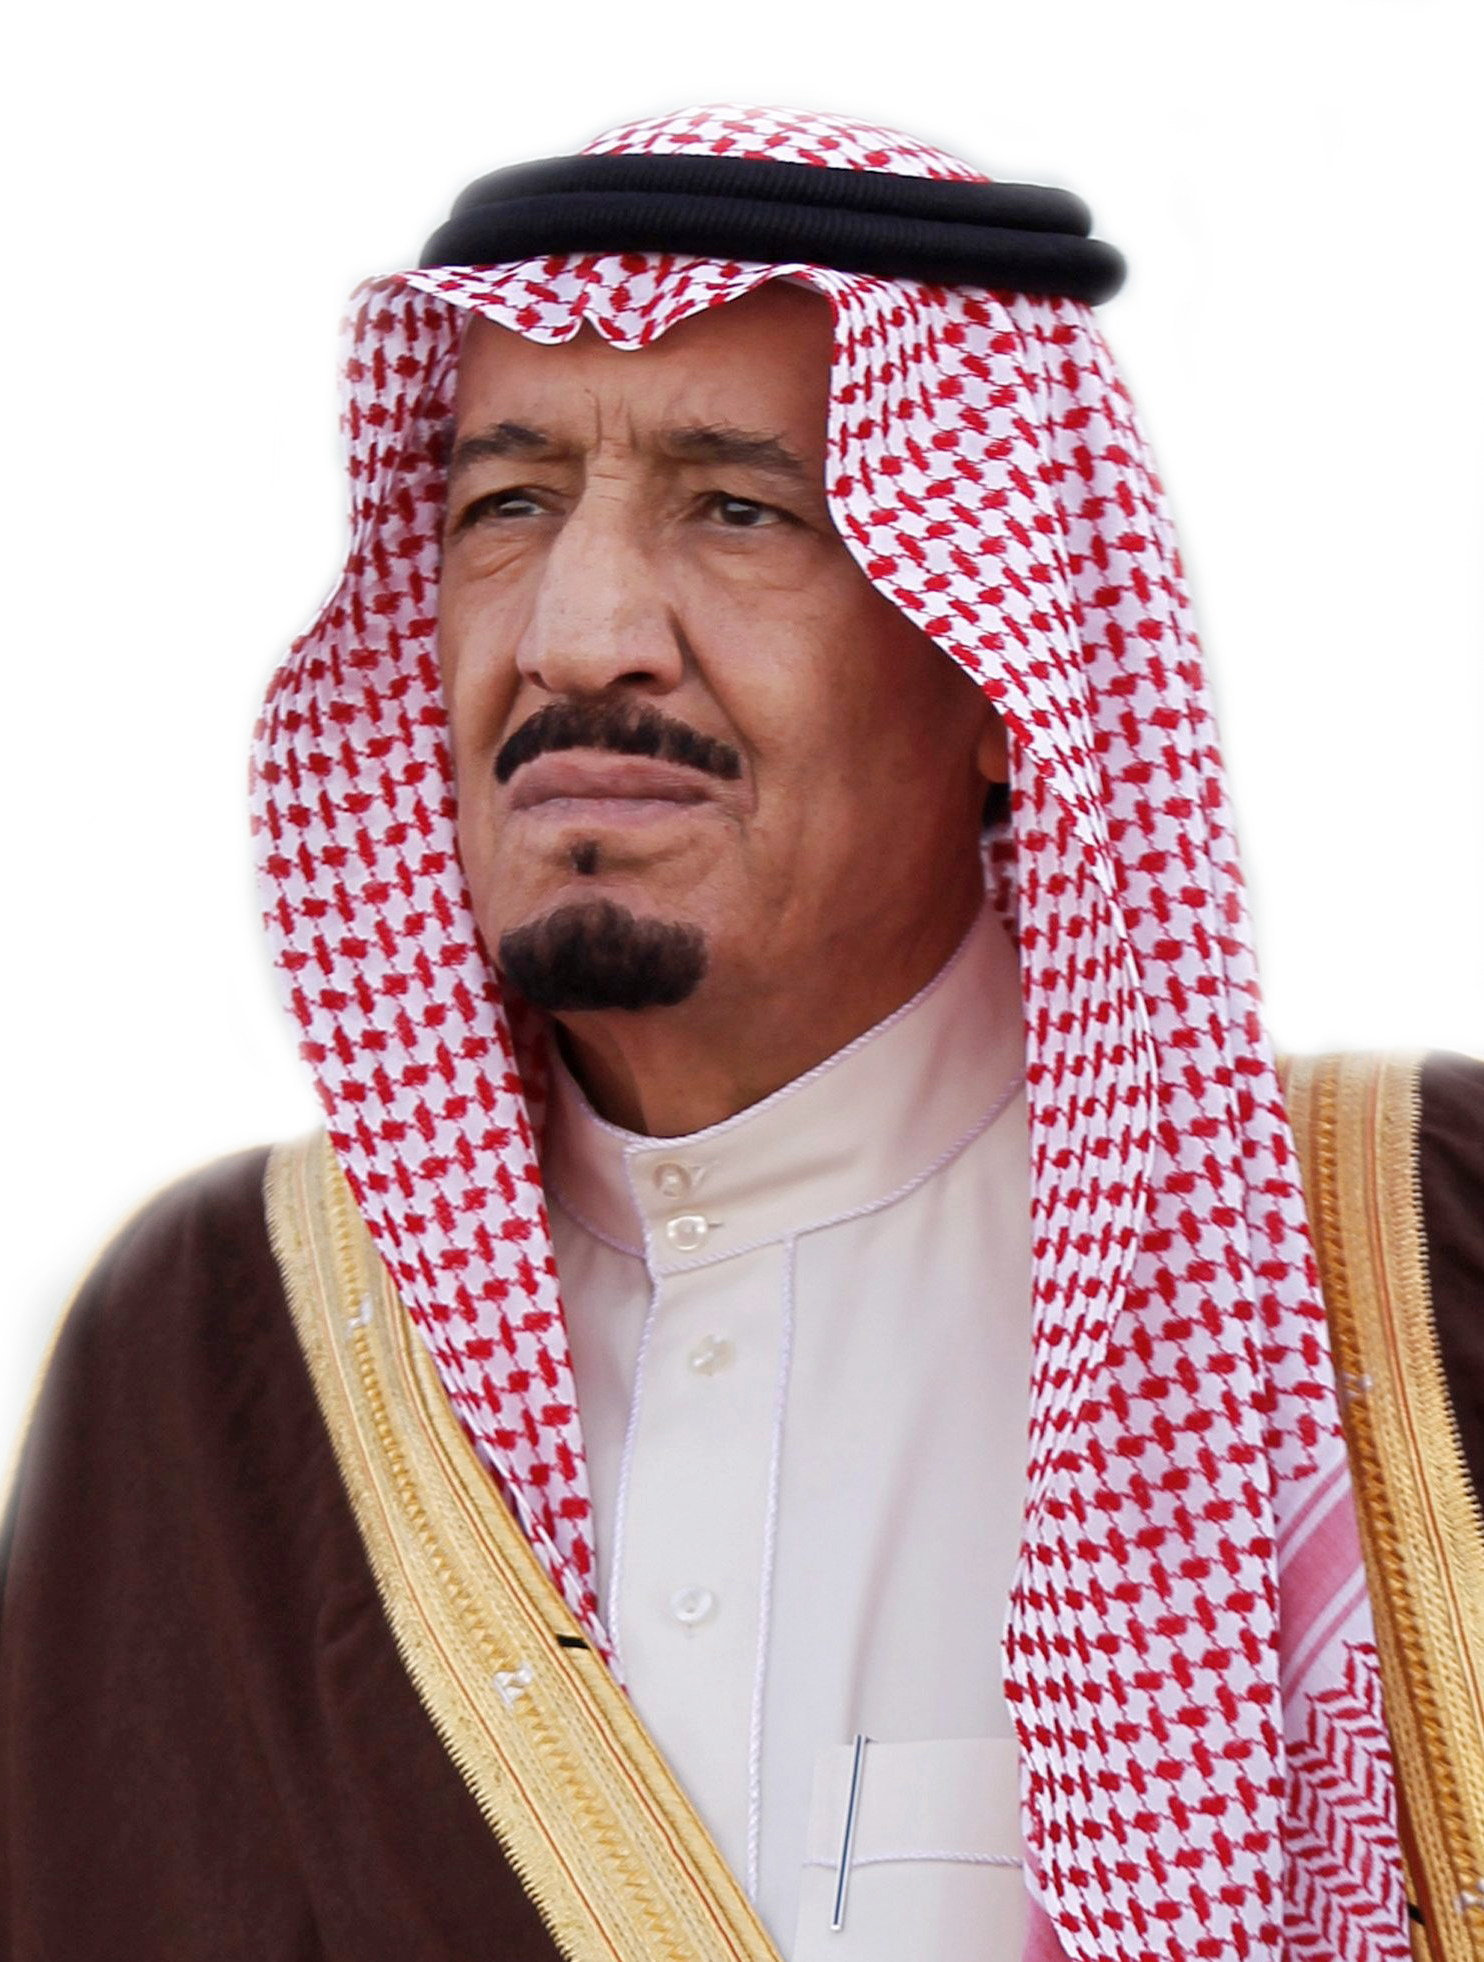 تولى خادم الحرمين الشريفين الملك سلمان بن عبد العزيز الحكم عام